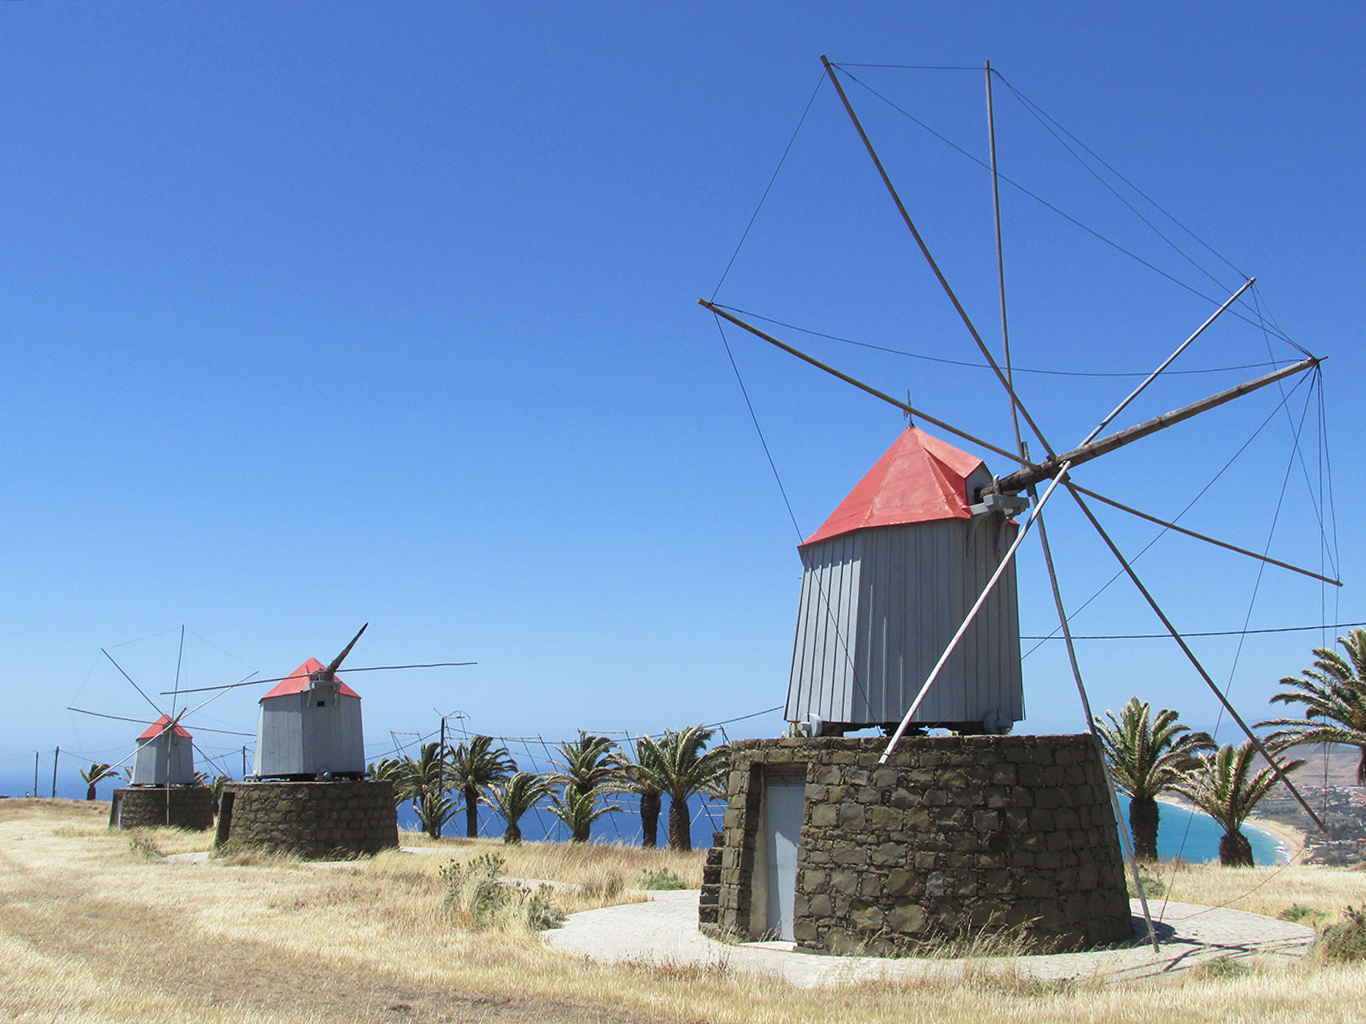 Větrné mlýny odnepaměti patří k ostrovu Porto Santo